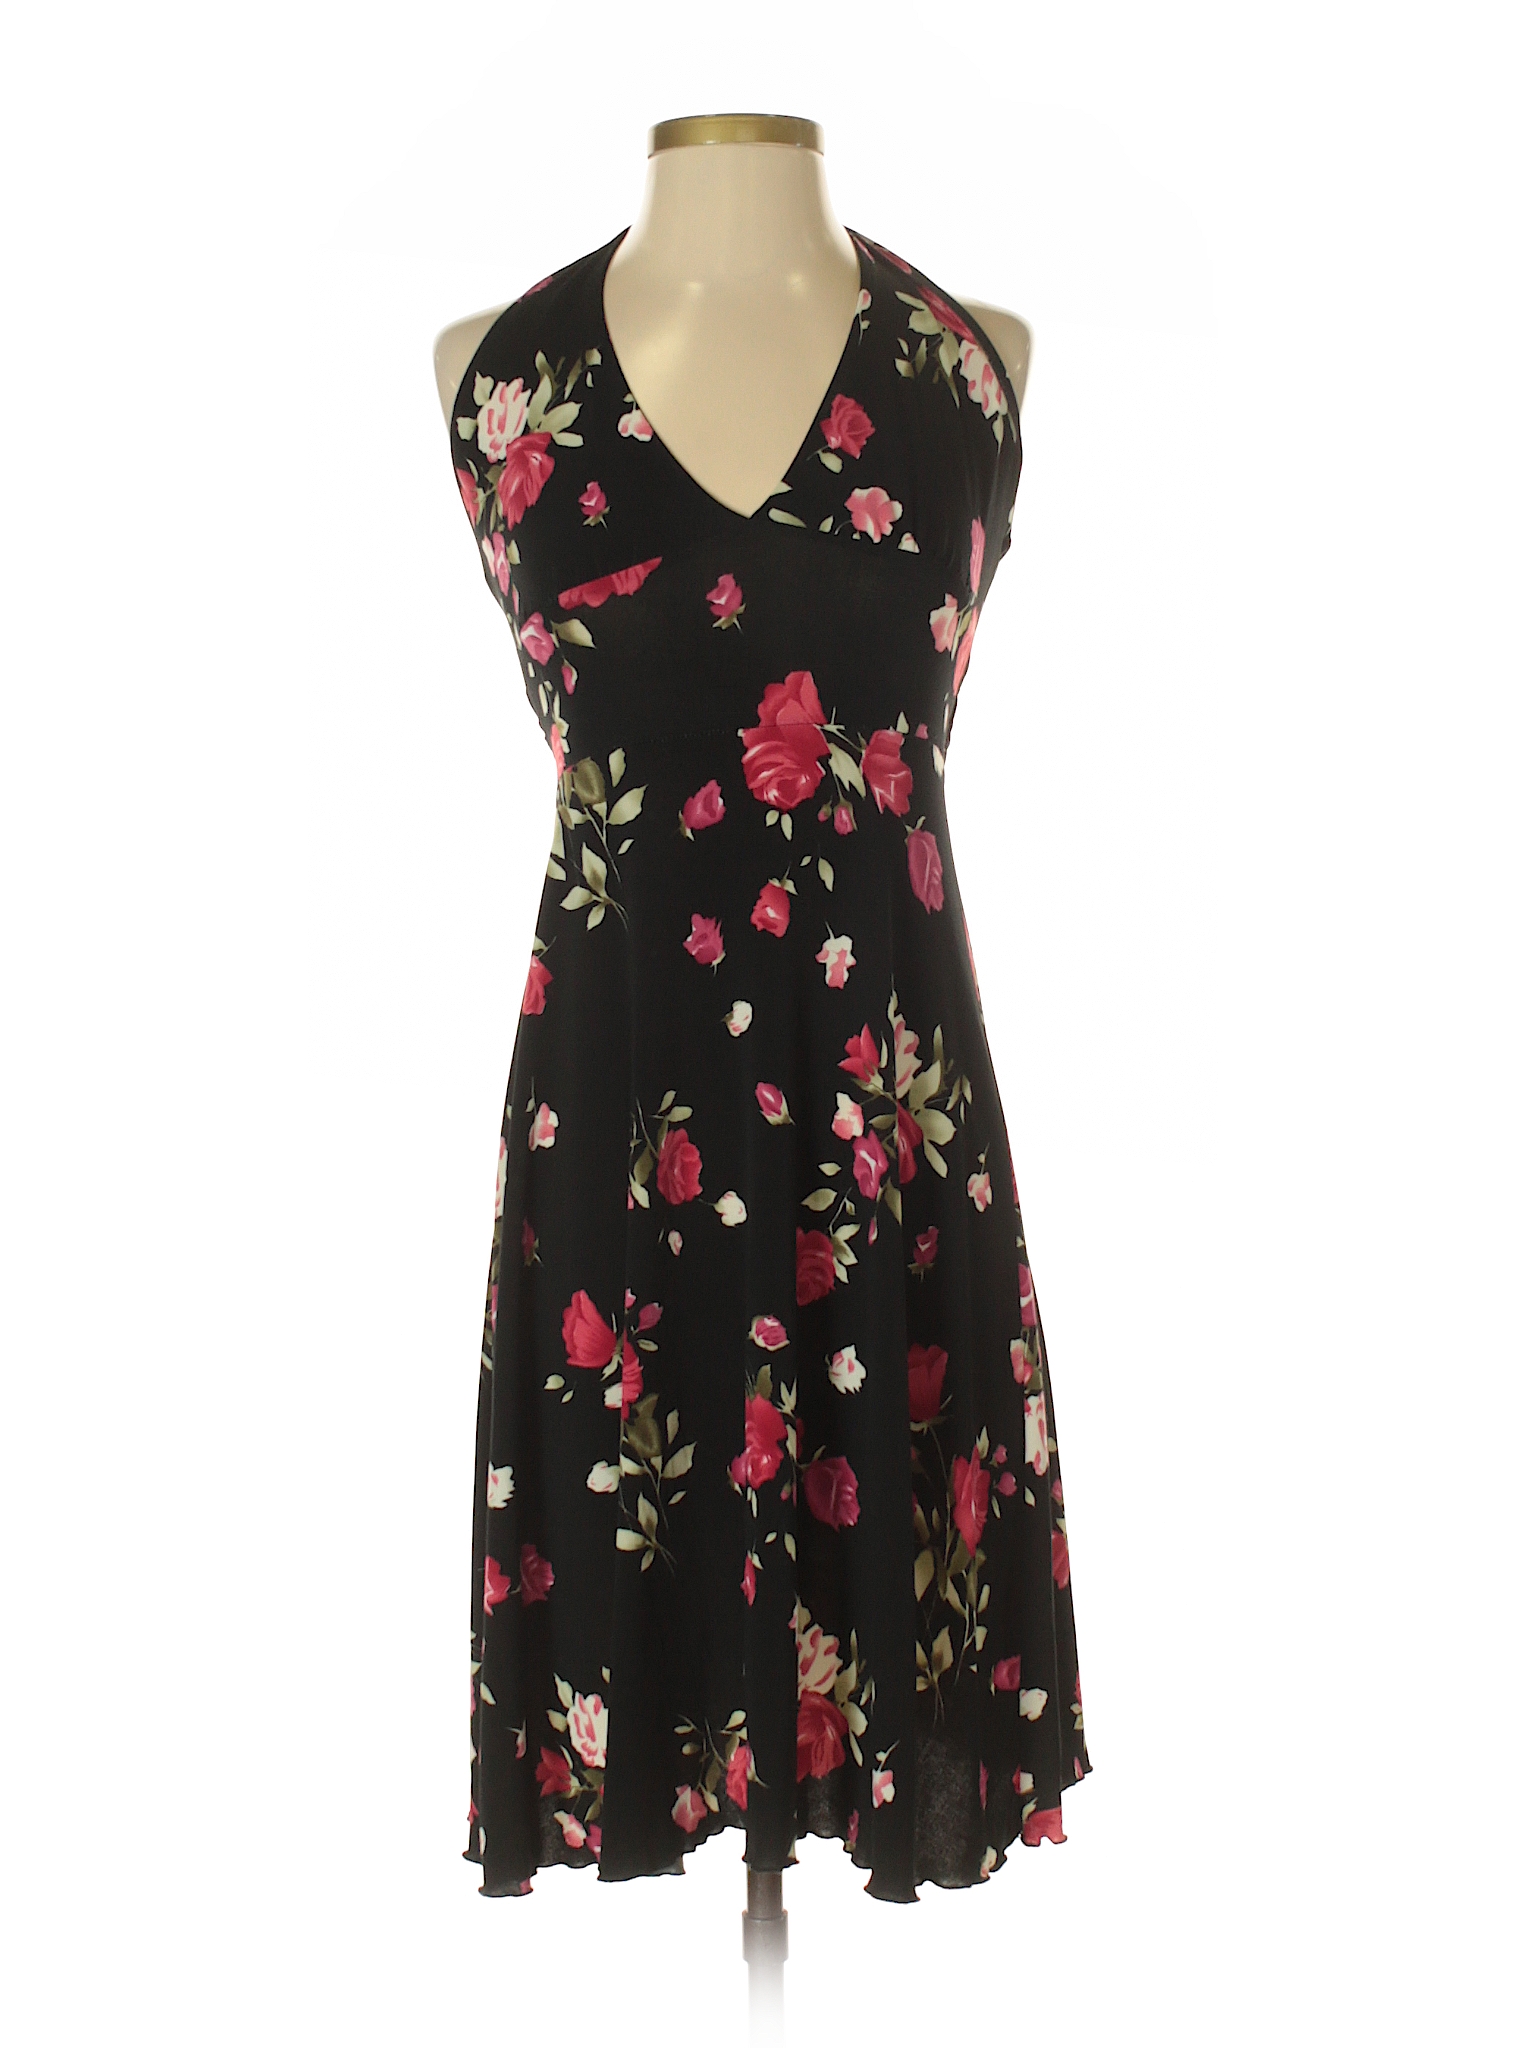 Bebe Bella Designs Floral Black Casual Dress Size S - 58% off | thredUP